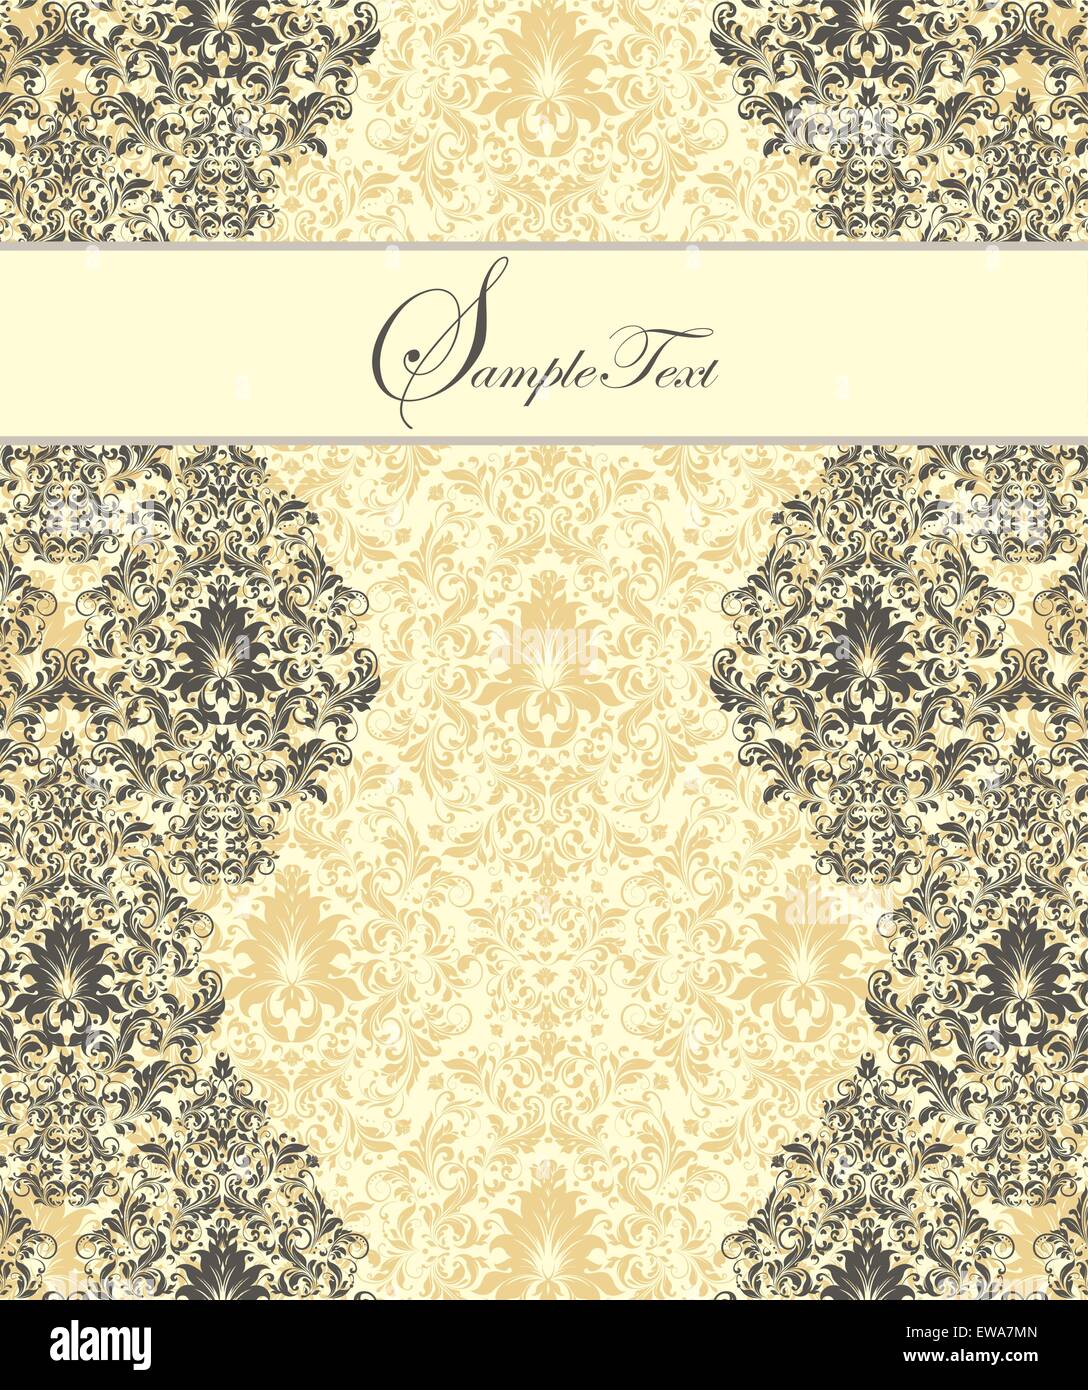 Vintage Einladungskarte mit reich verzierten eleganten Retro-abstrakten floralen Design, graue Blumen und Blätter auf gelb und weiß Stock Vektor